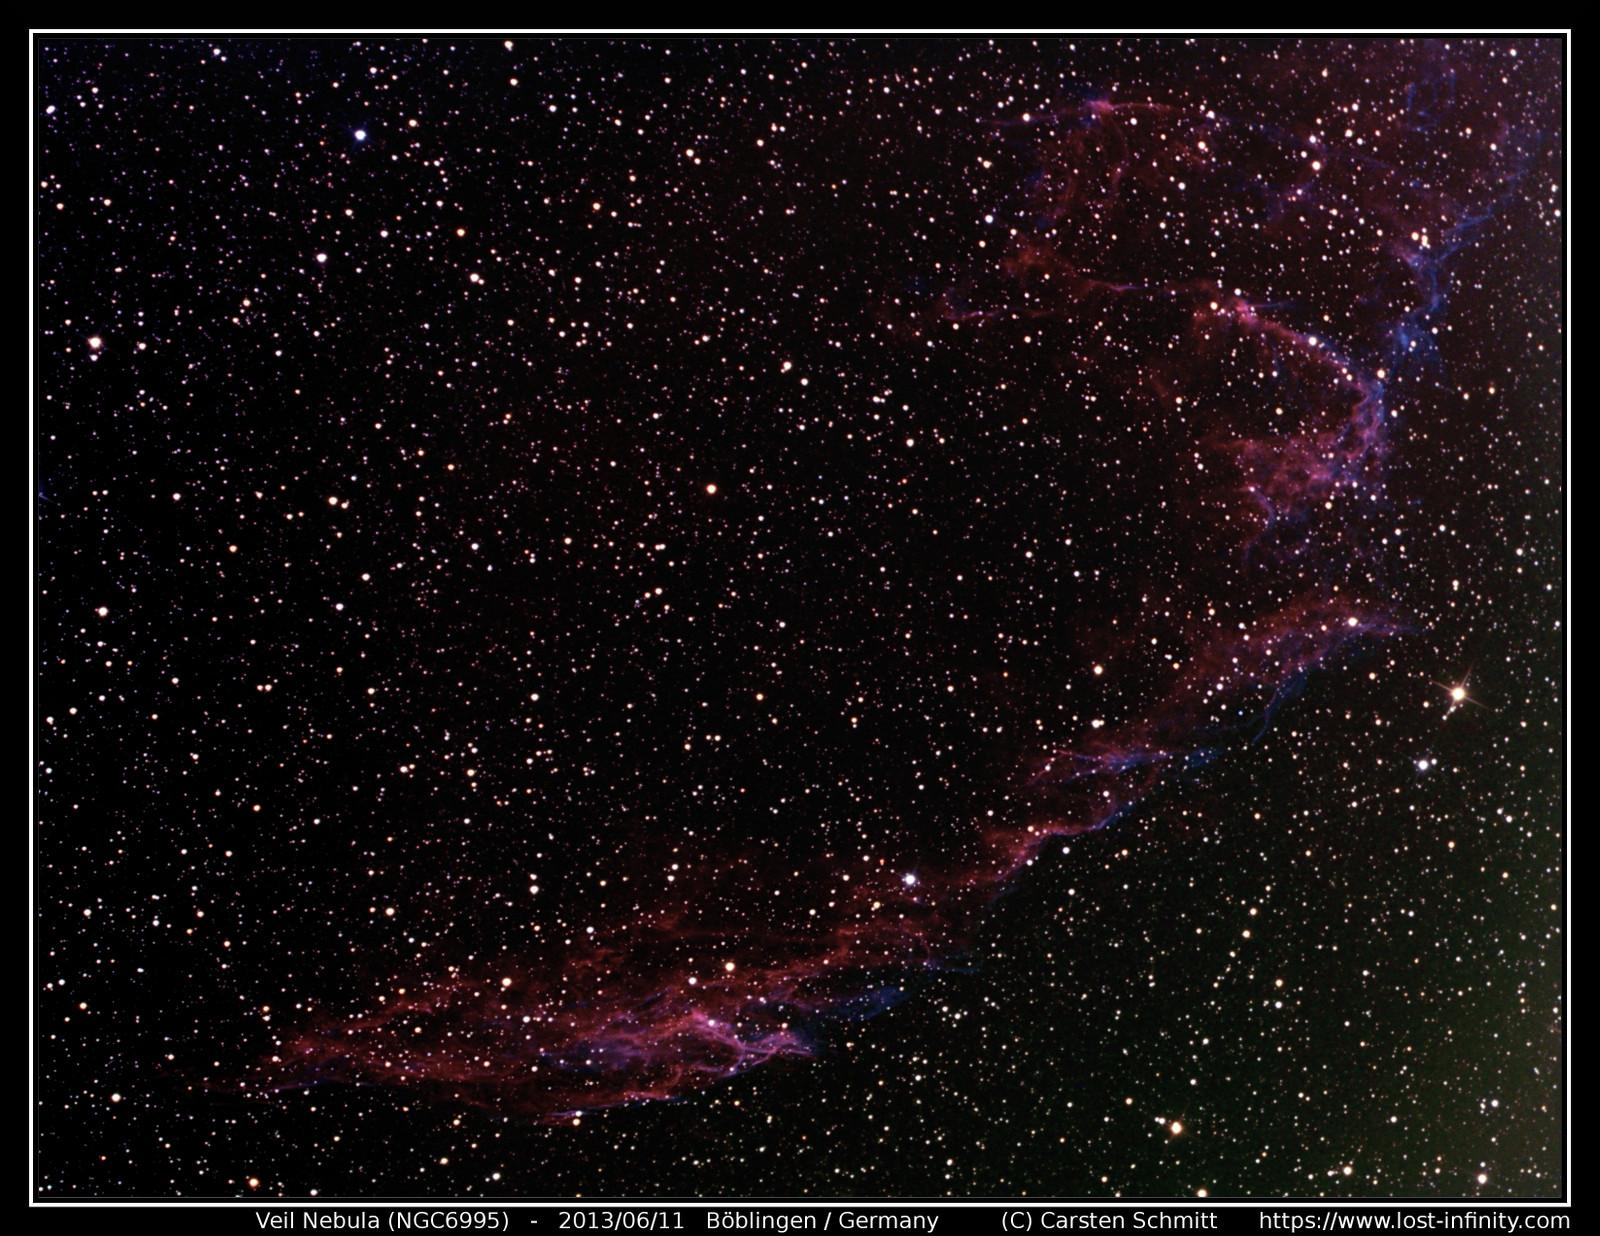 Veil Nebula (NGC6995) - 2013/06/11